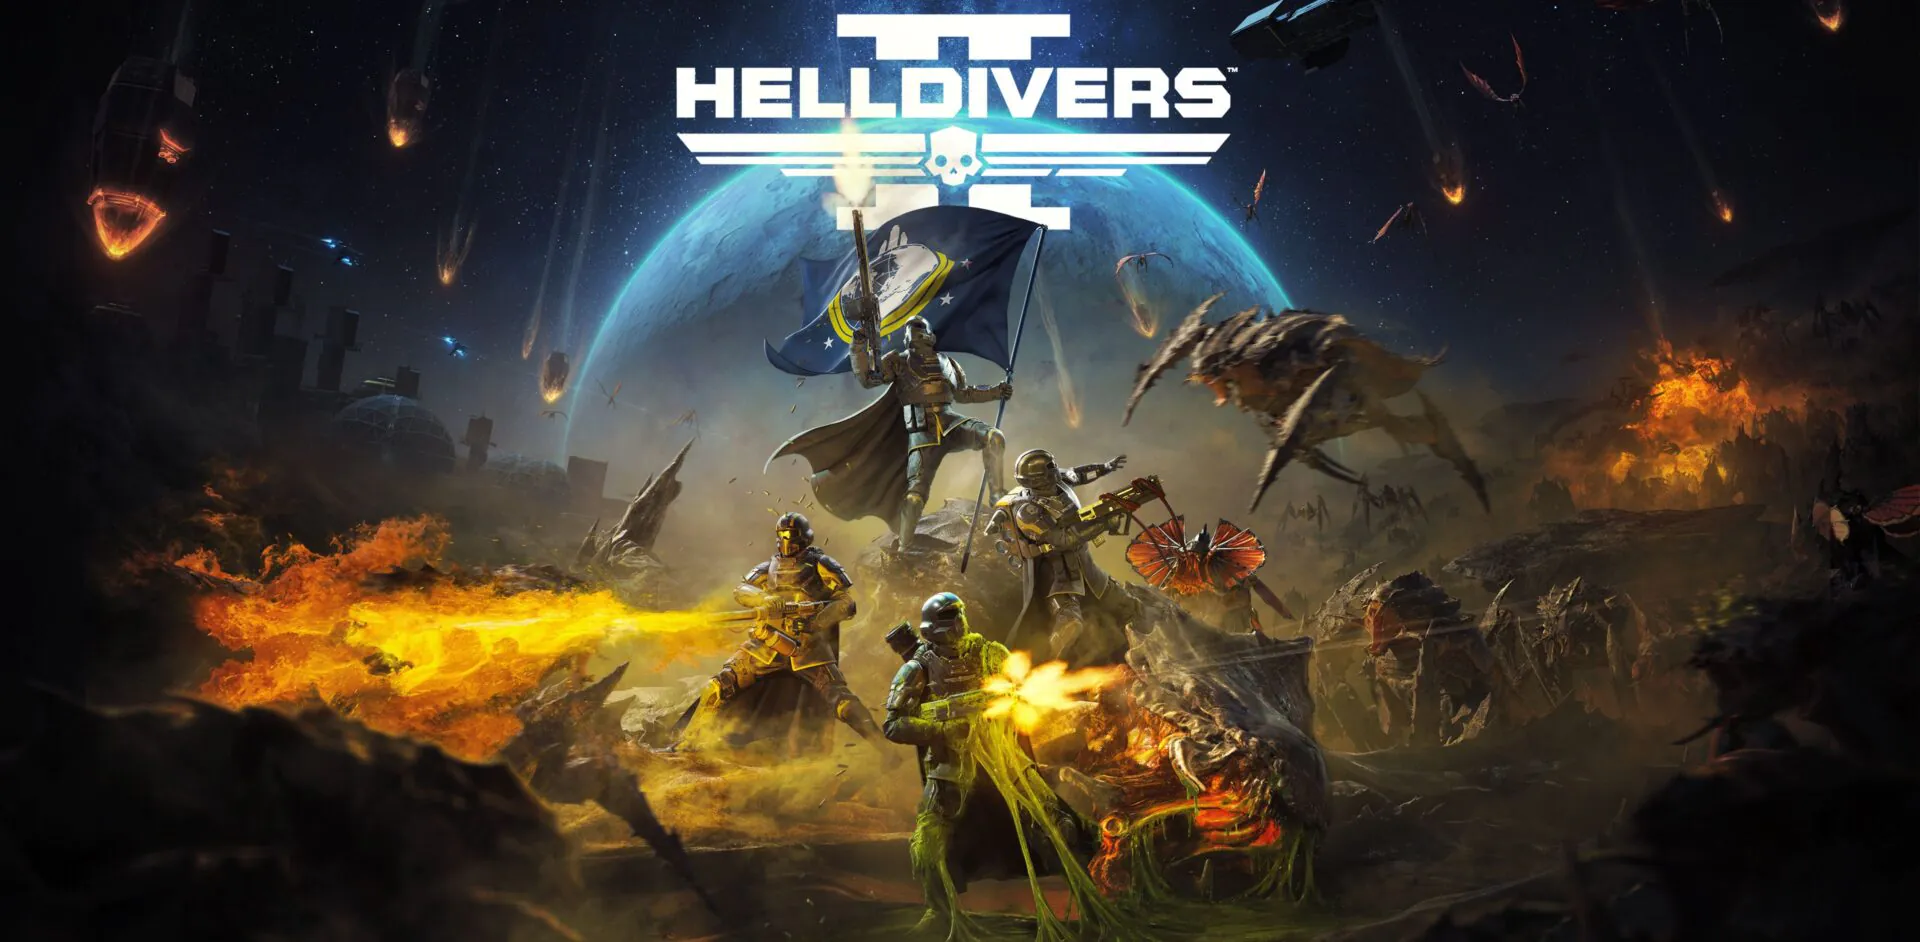 Helldivers 2 با 57 هزار بازیکن، سومین عرضه بزرگ پلی استیشن روی PC را رقم زد